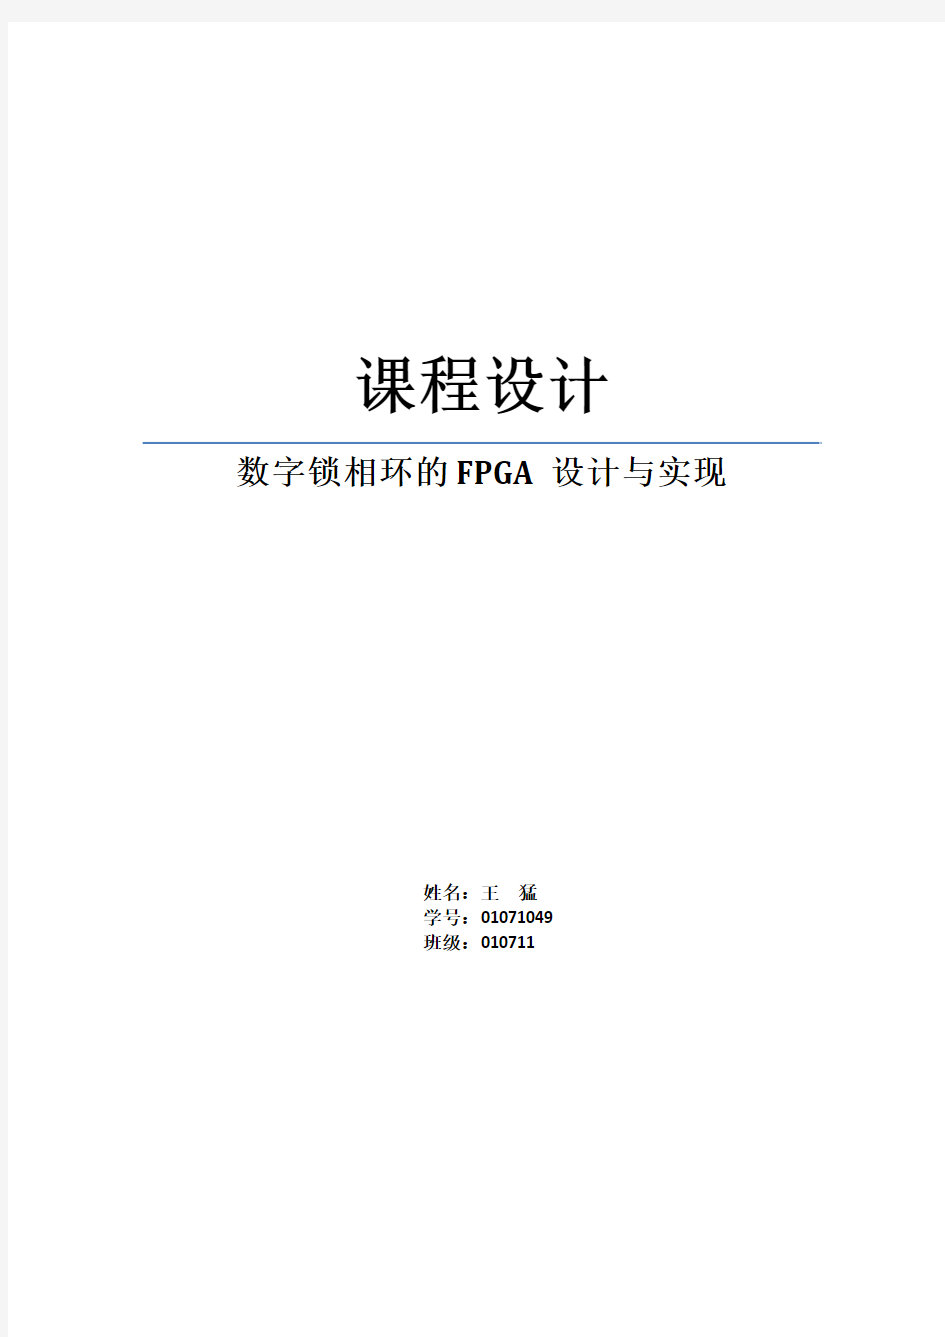 数字锁相环的FPGA设计与实现(最终版1)